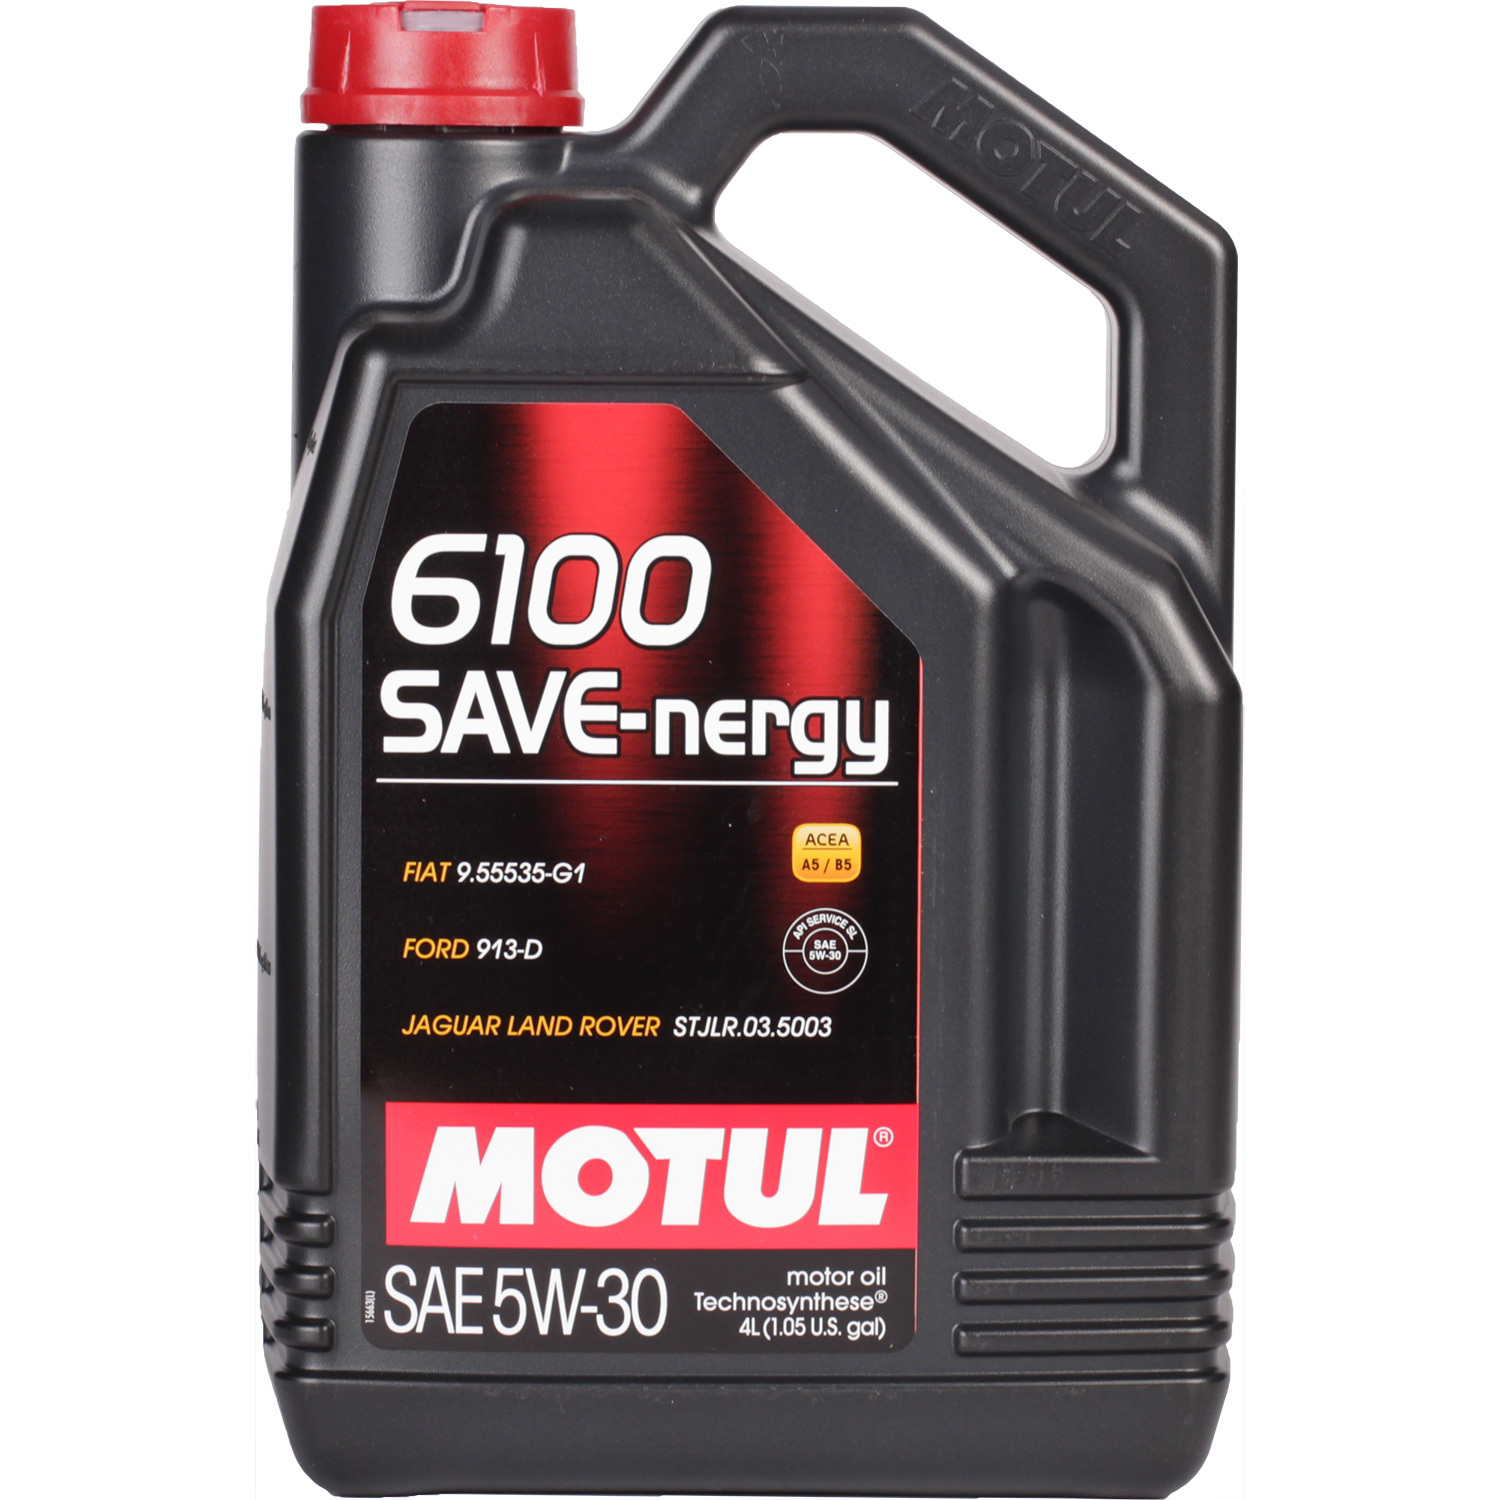 Motul Моторное масло Motul 6100 SAVE-NERGY 5W-30, 4 л motul моторное масло motul 8100 eco nergy 5w 30 5 л